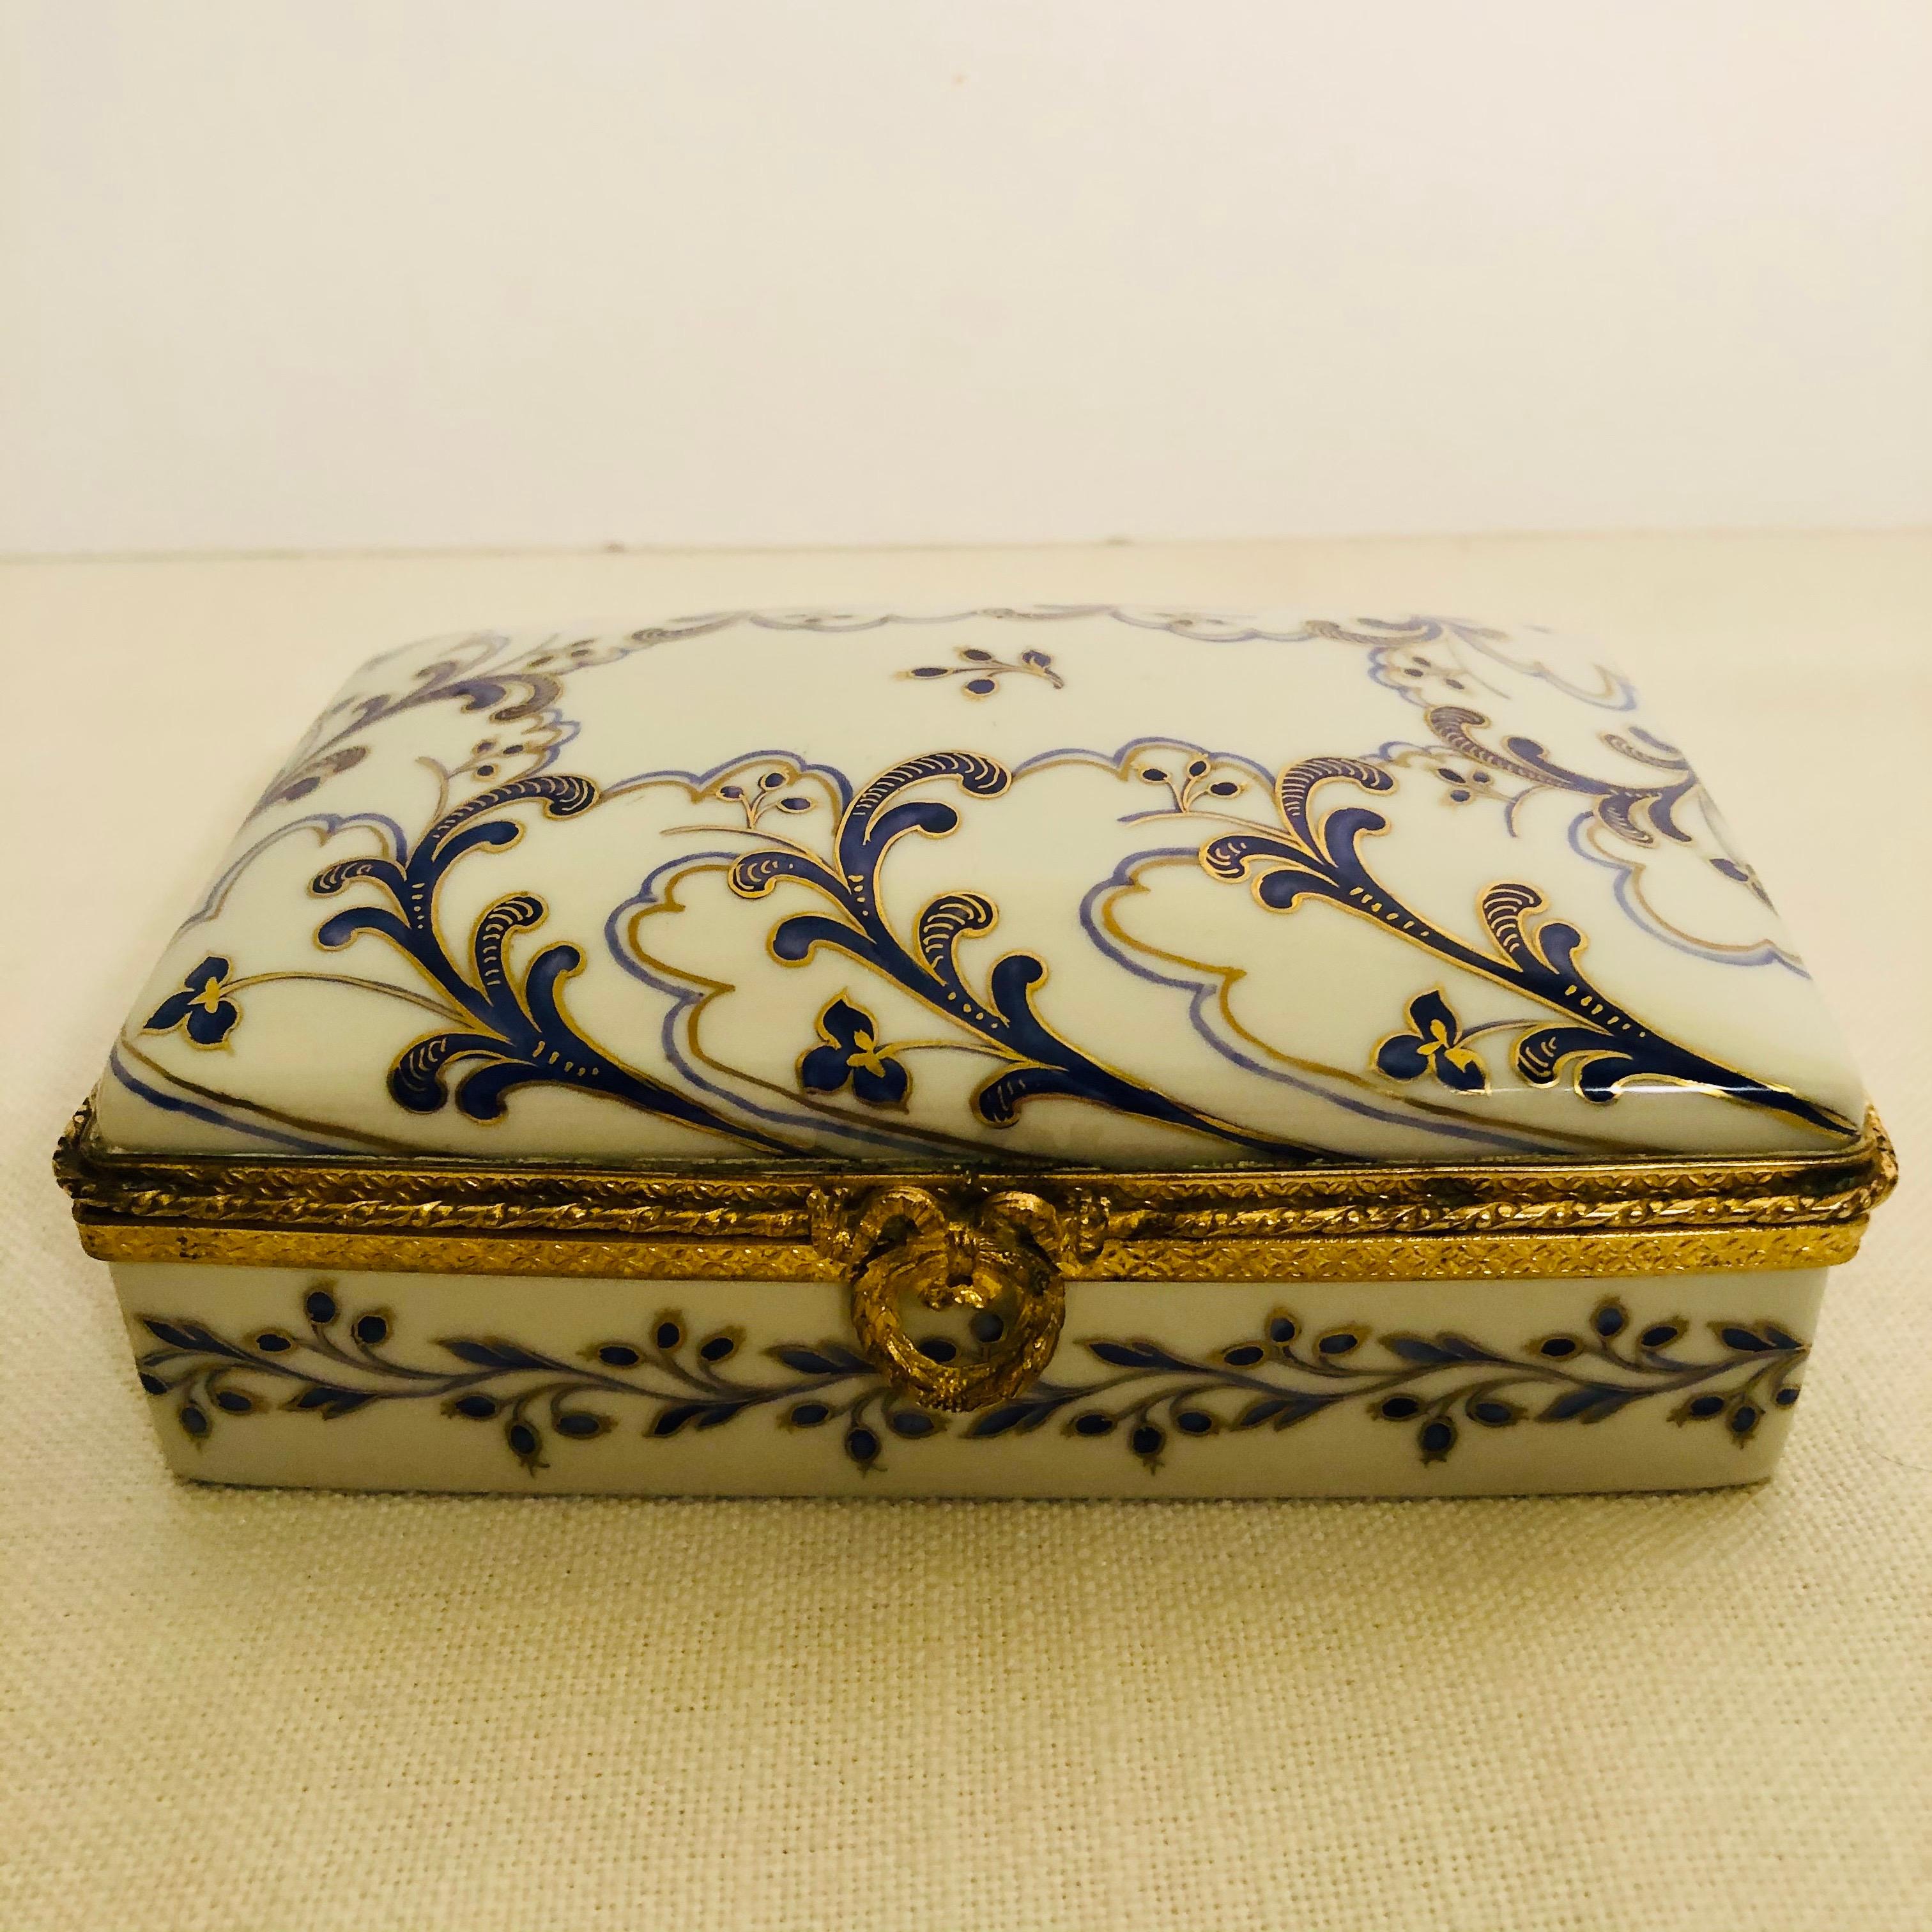 Je souhaite vous offrir cette belle boîte en porcelaine Le Tallec qui est peinte à la main avec un décor d'arabesques cobalt et or sur un fond blanc. Cette boîte Le Tallec serait un ajout spécial pour tous ceux qui collectionnent les boîtes en